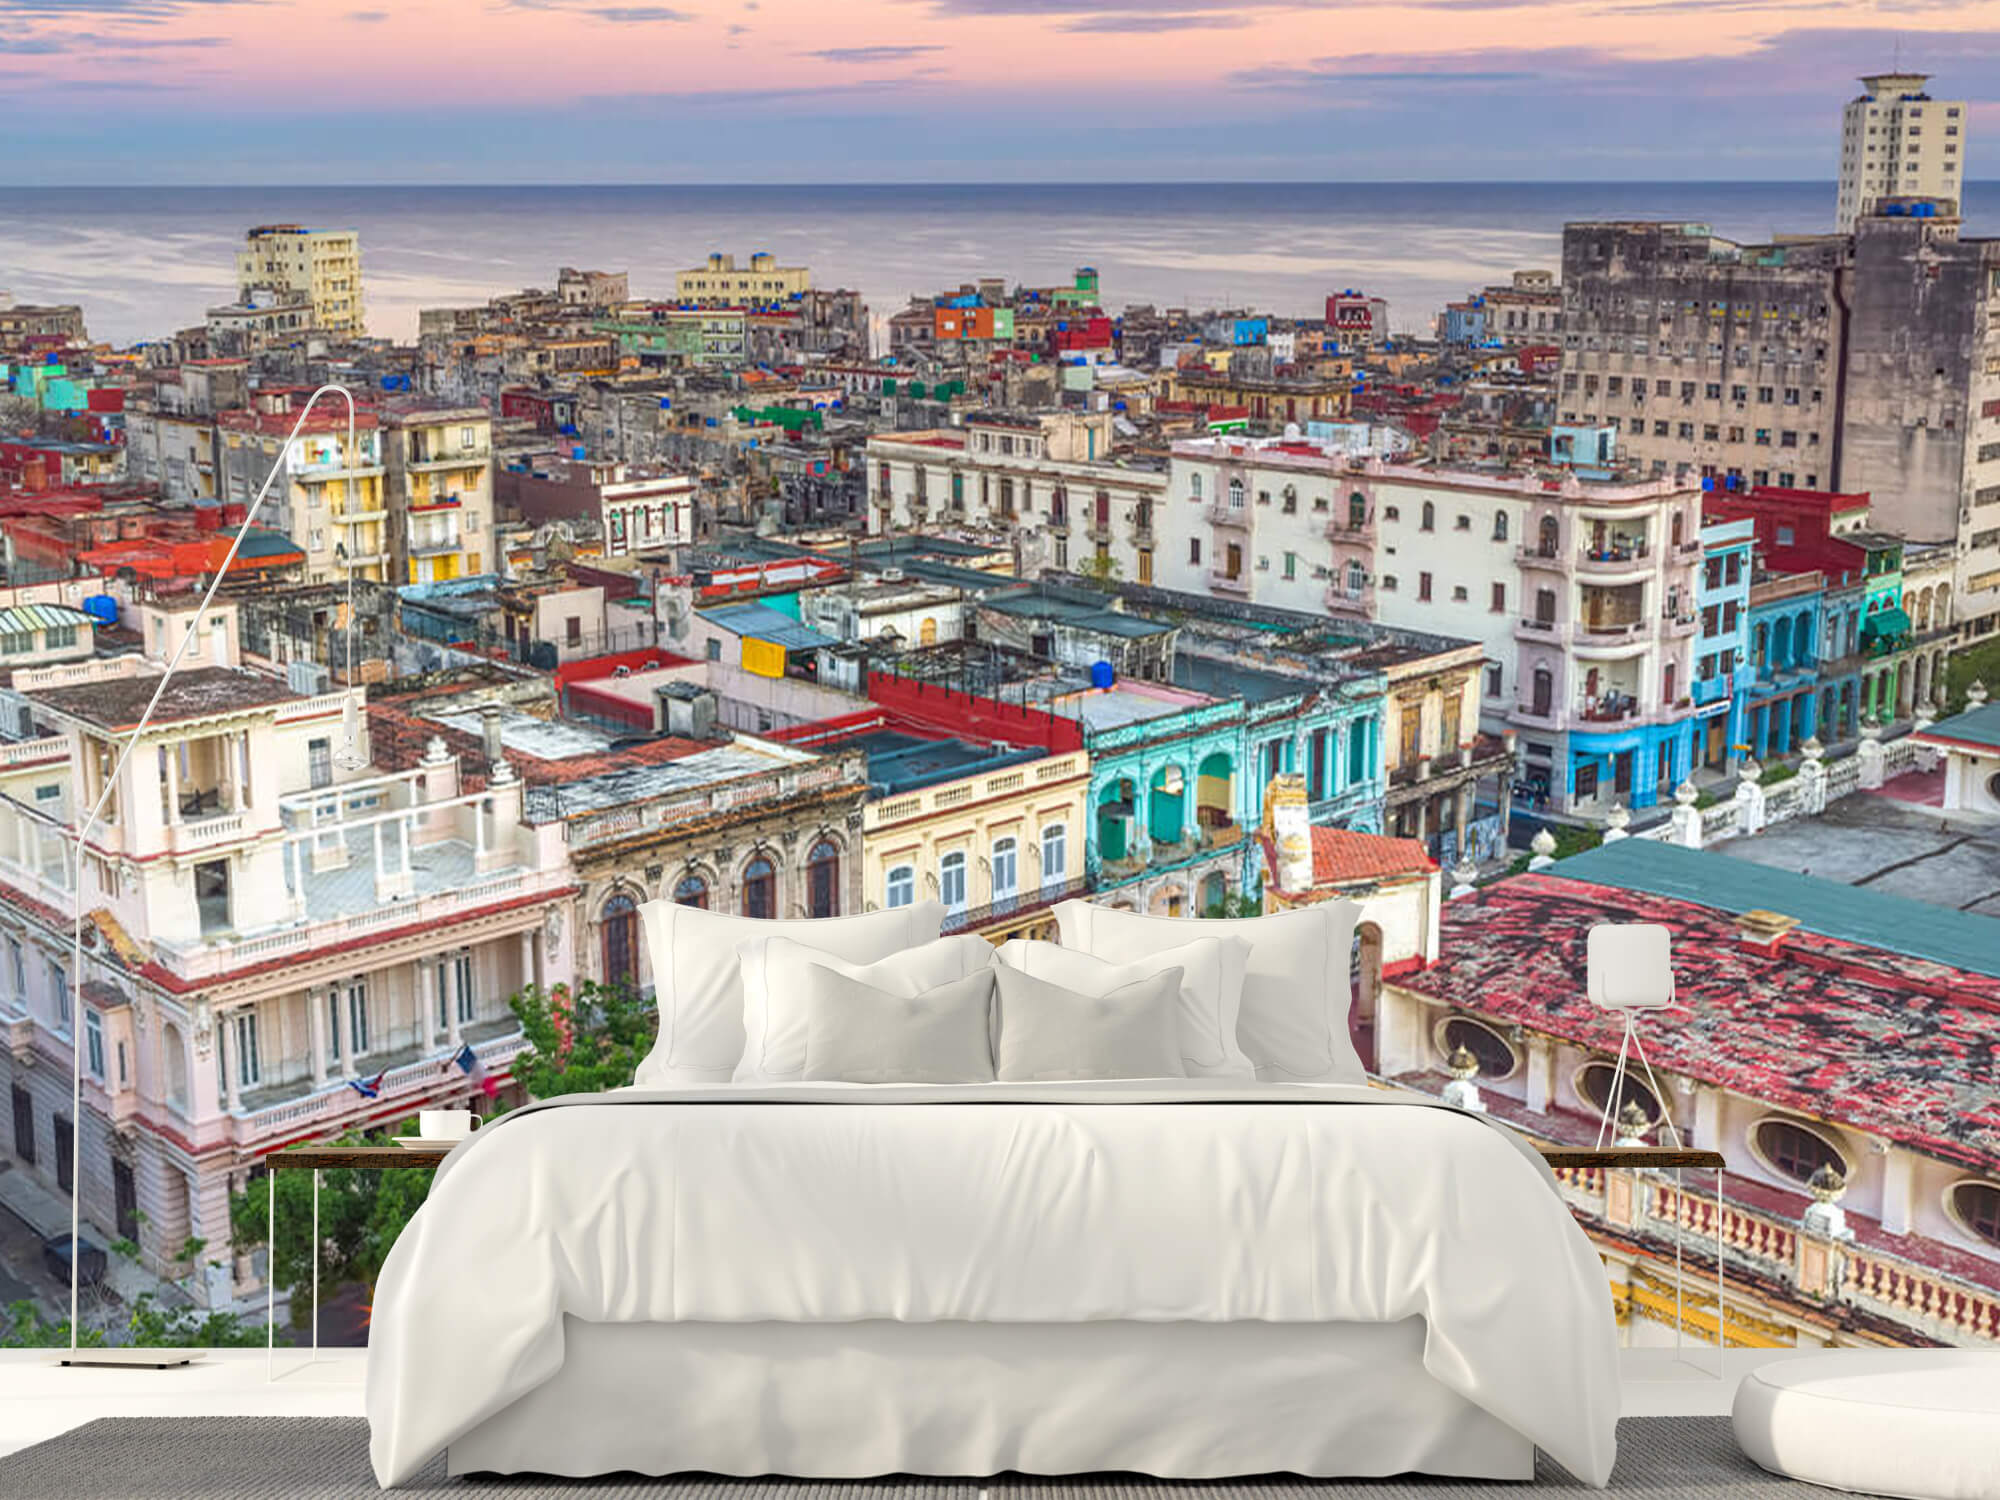  Papel pintado con La Habana desde arriba - Salón 1